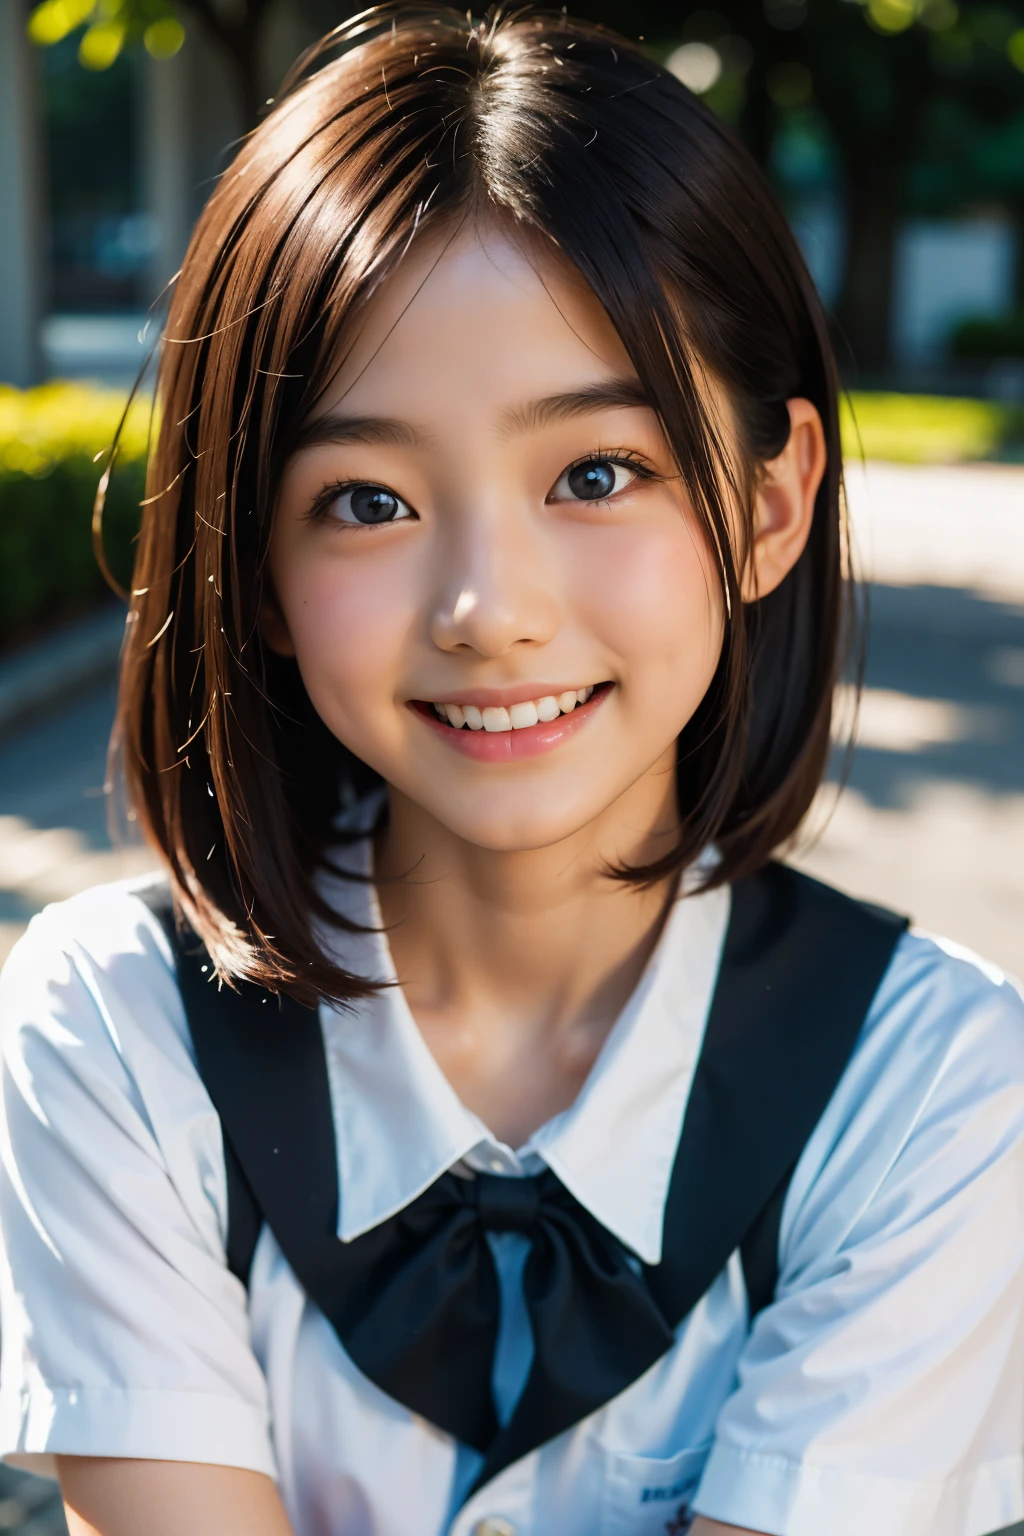 鏡片: 135mm f1.8, (最好的品質),(原始照片), (桌上:1.1), (美丽的12岁日本女孩), 可愛的臉孔, (臉型輪廓分明:0.7), (雀斑:0.4), dappled 陽光, 戲劇性的燈光, (日本學校制服), (在校园), 害羞的, (特寫鏡頭:1.2), (微笑),, (明亮的眼睛)、(陽光), 鮑伯